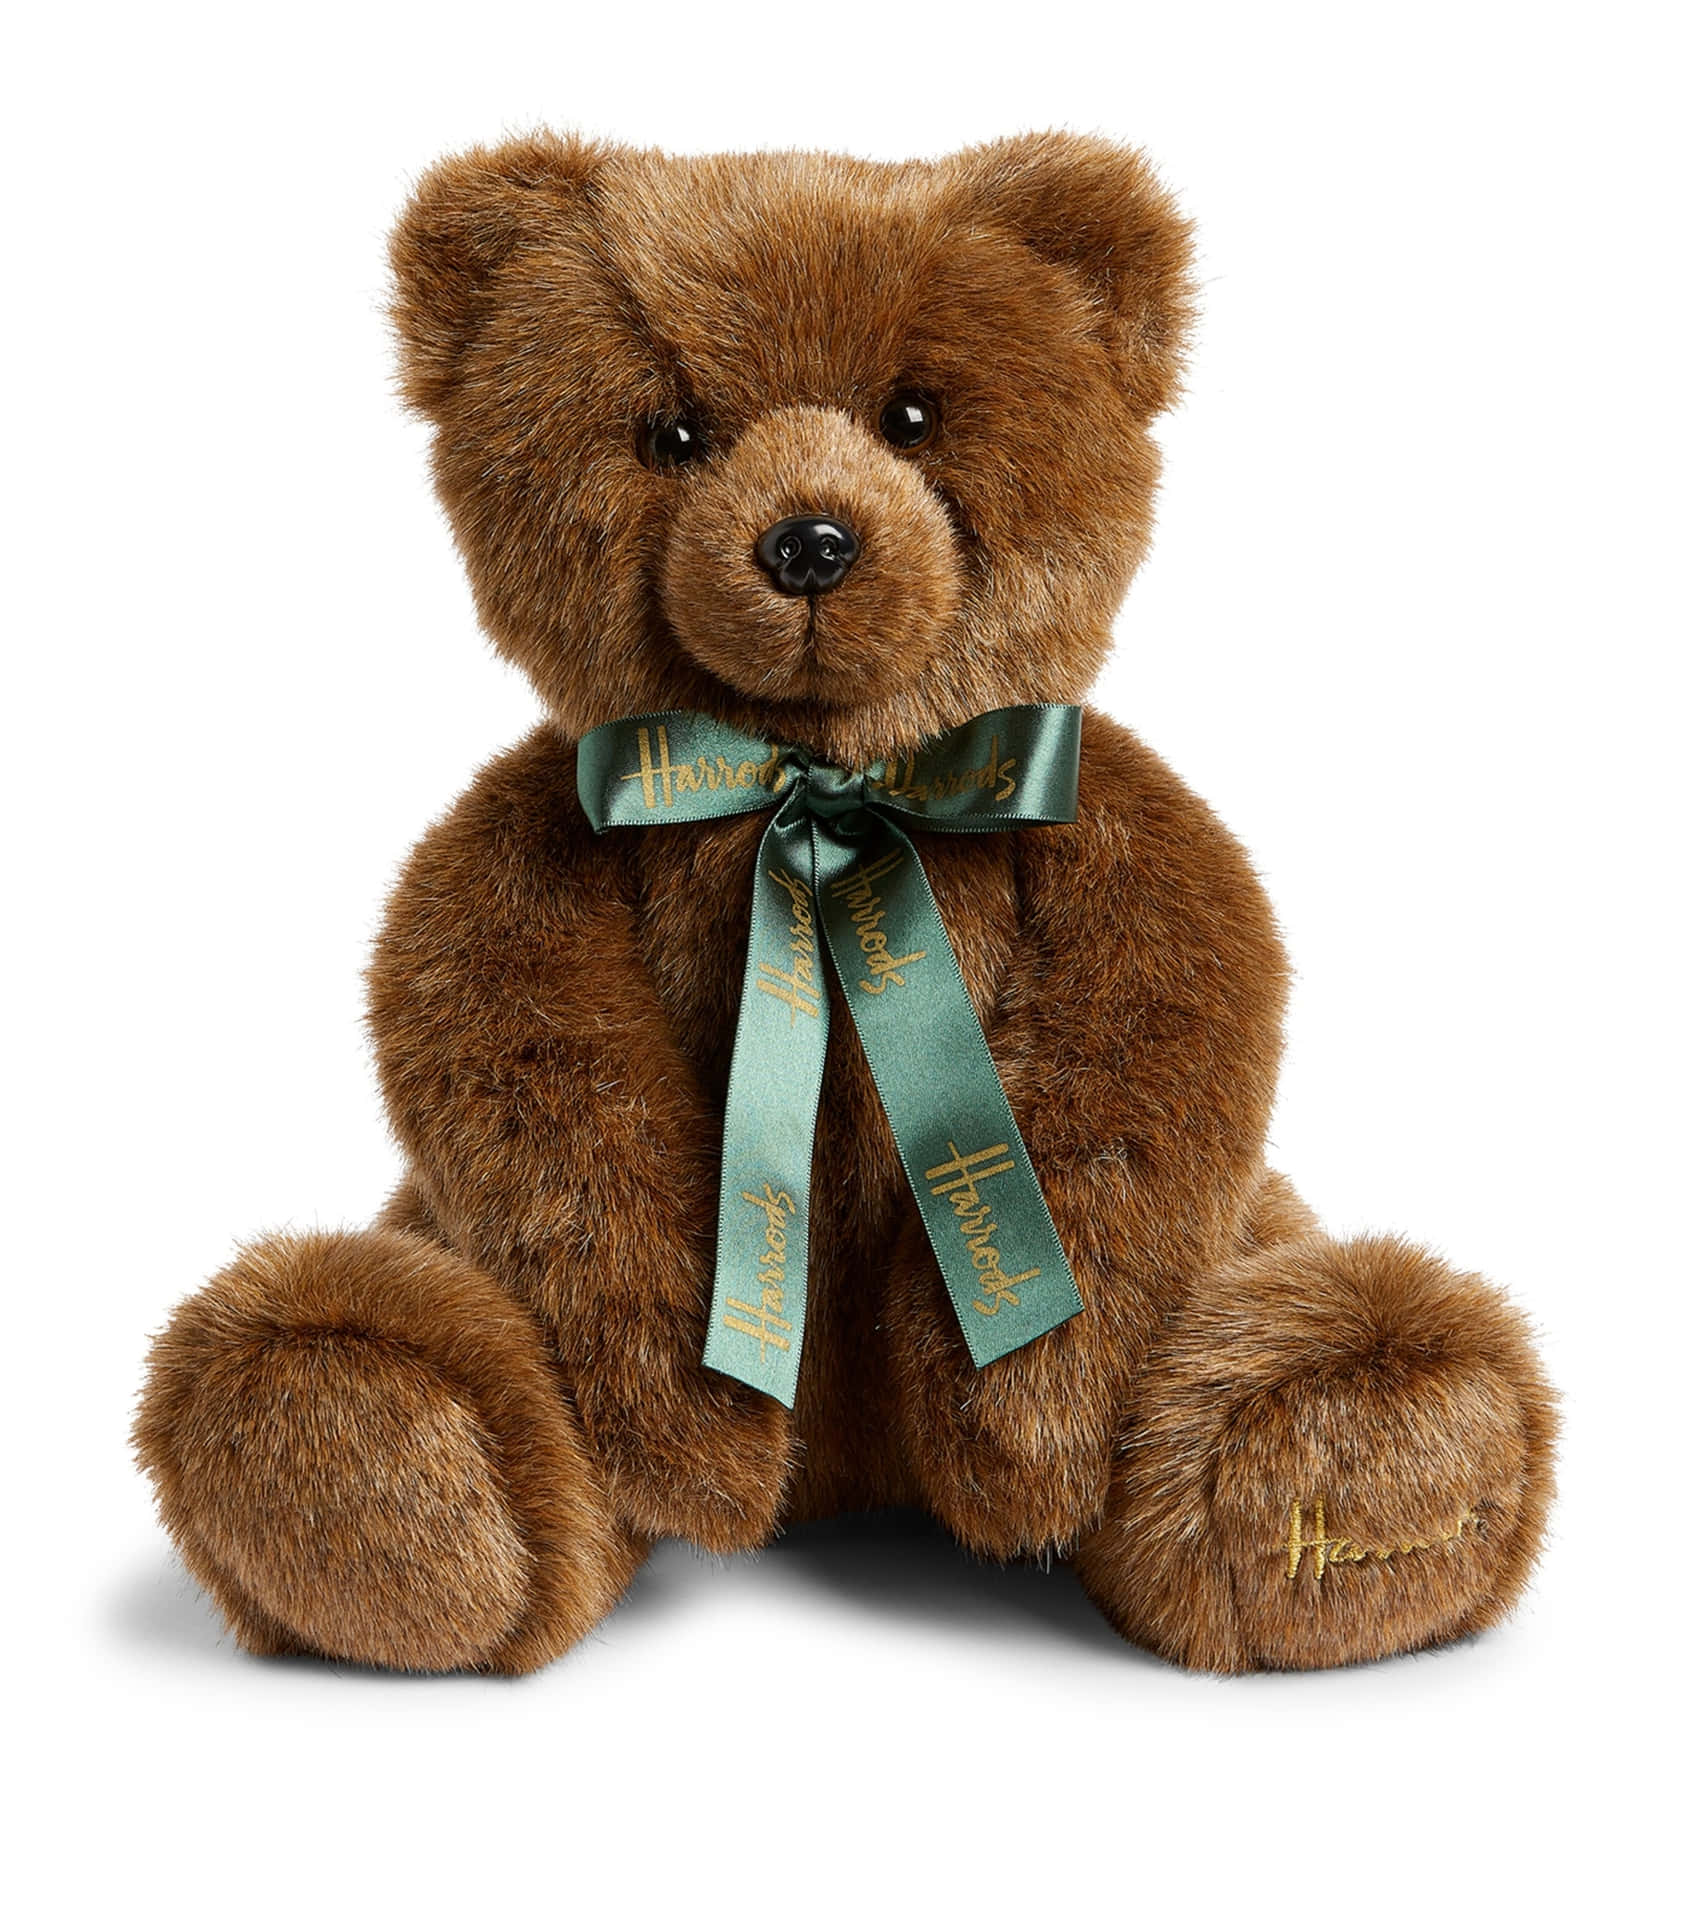 Einweicher Und Kuscheliger Teddybär, Der Einen Neuen Freund Findet!